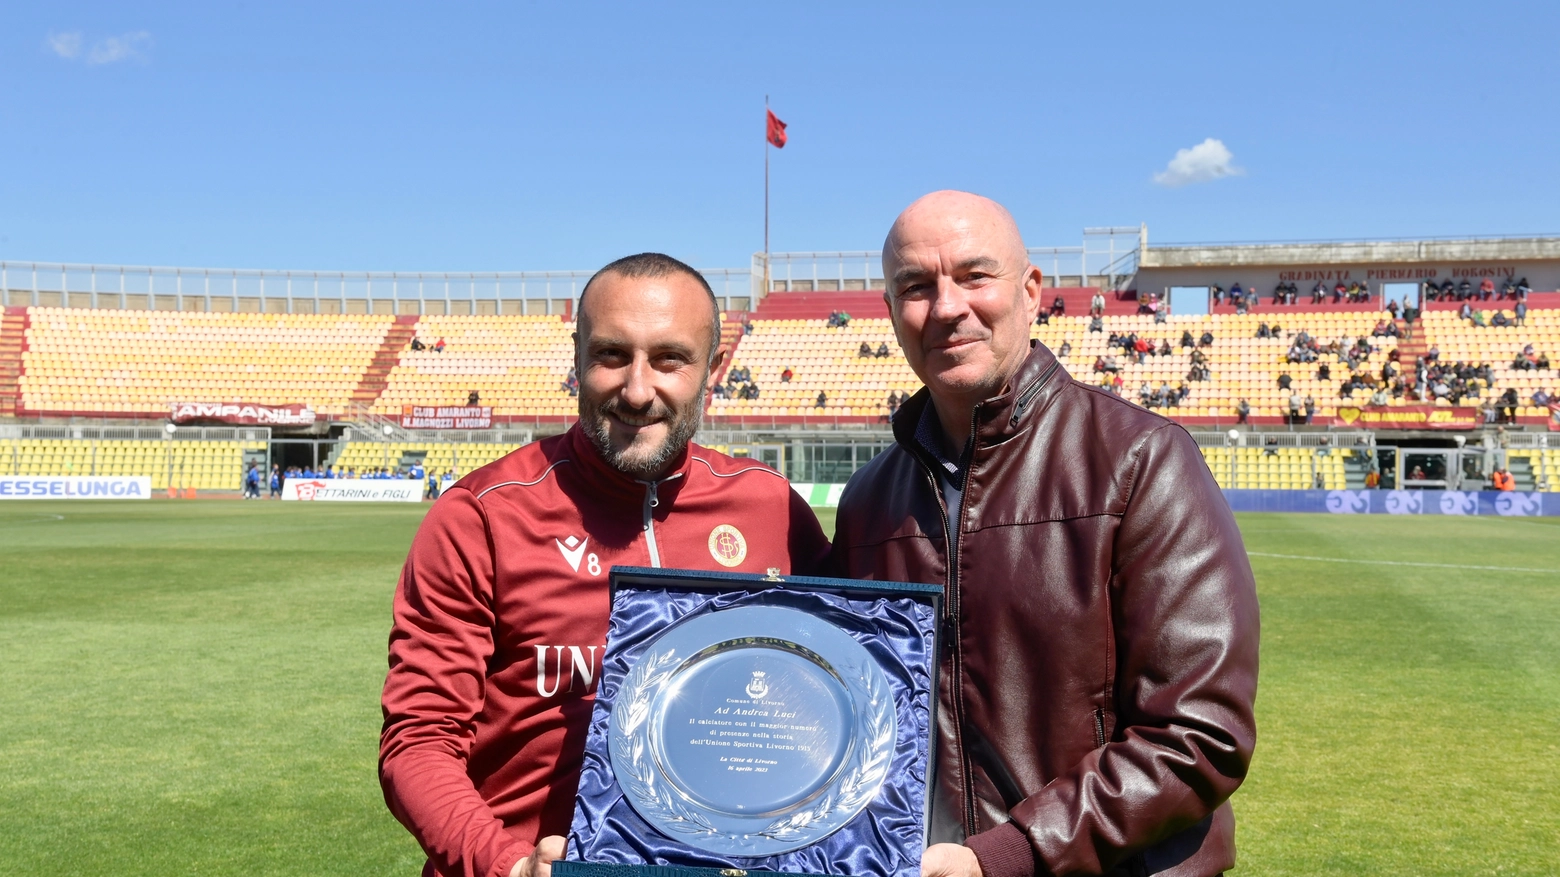 Il sindaco Salvetti premia il capitano Luci (Foto Novi)